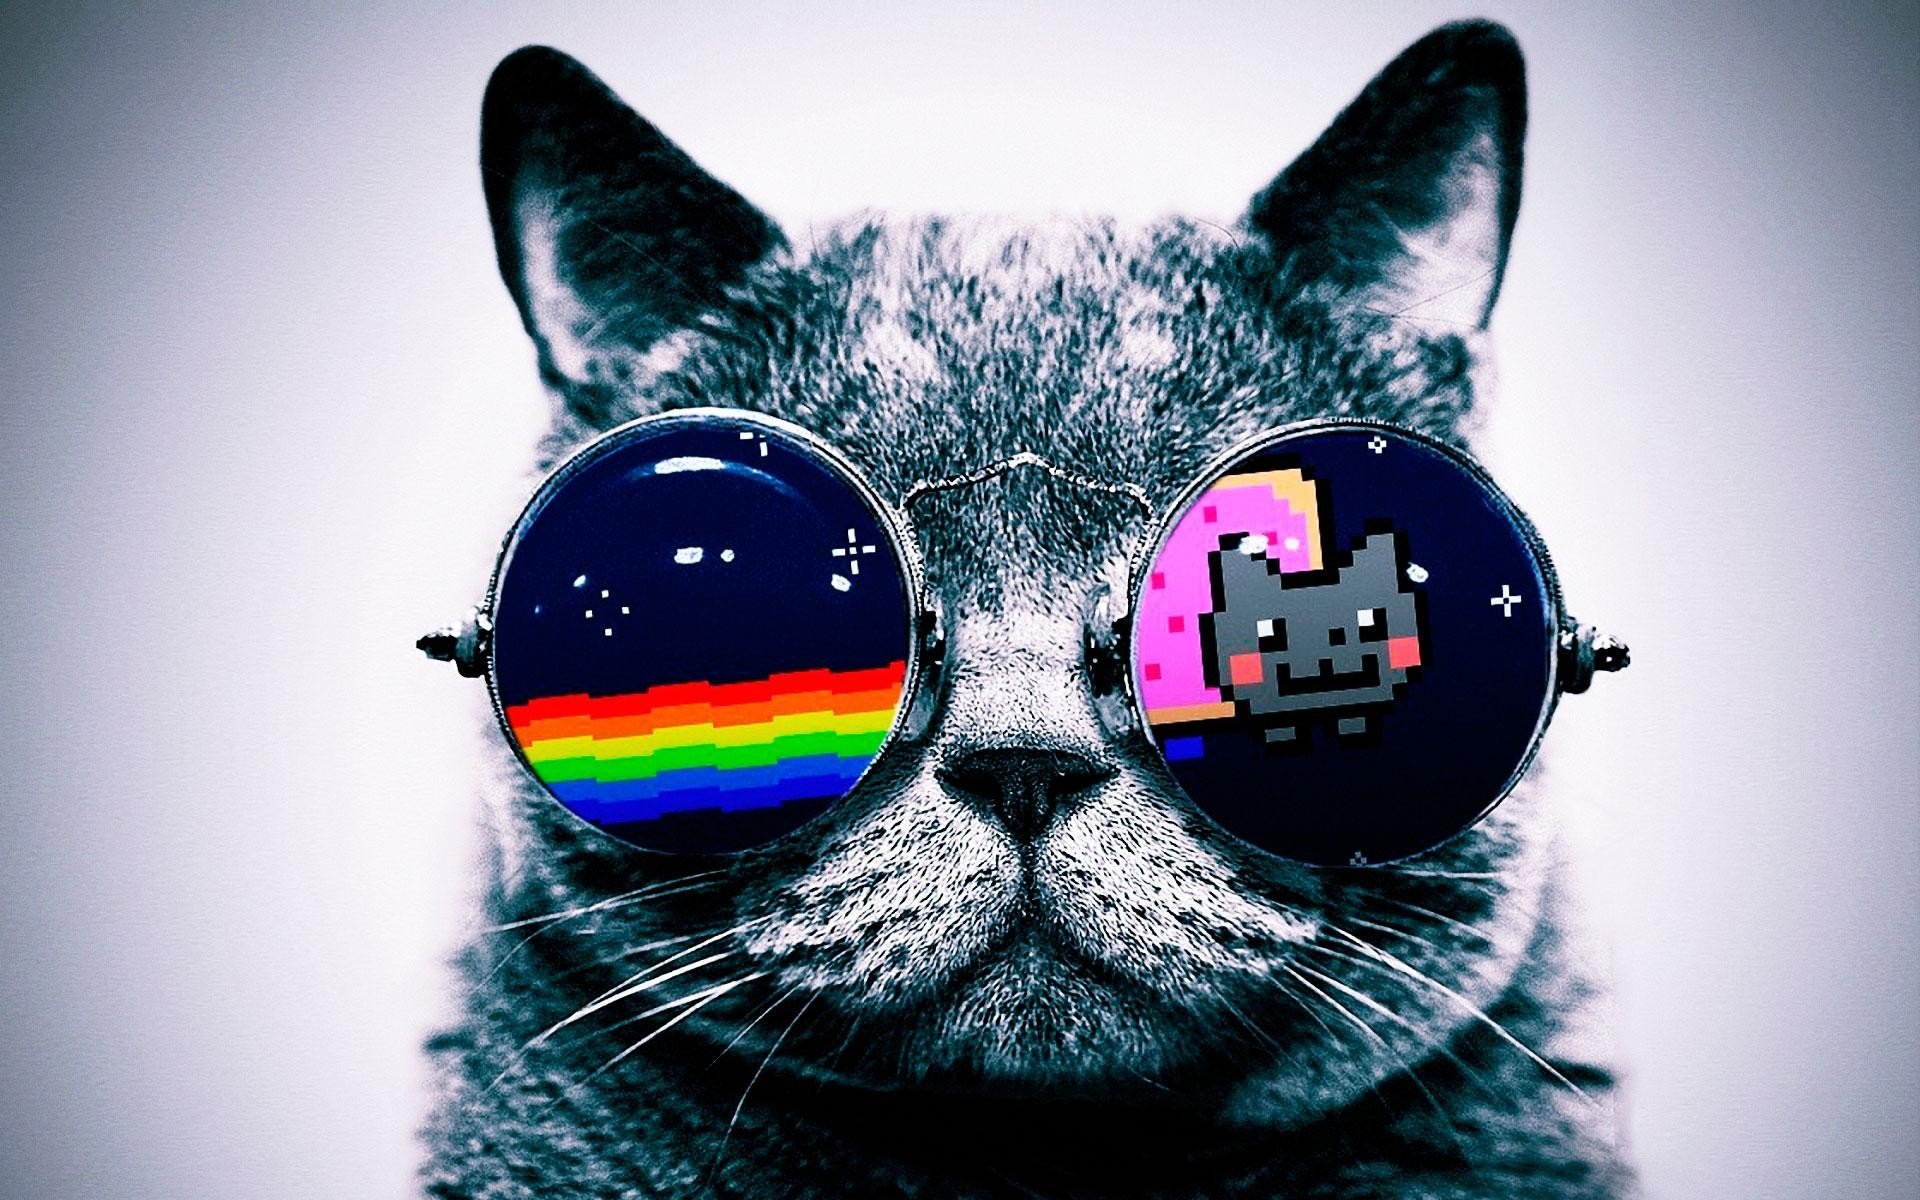  Nyan  Cat  Wallpapers  Free Download PixelsTalk Net